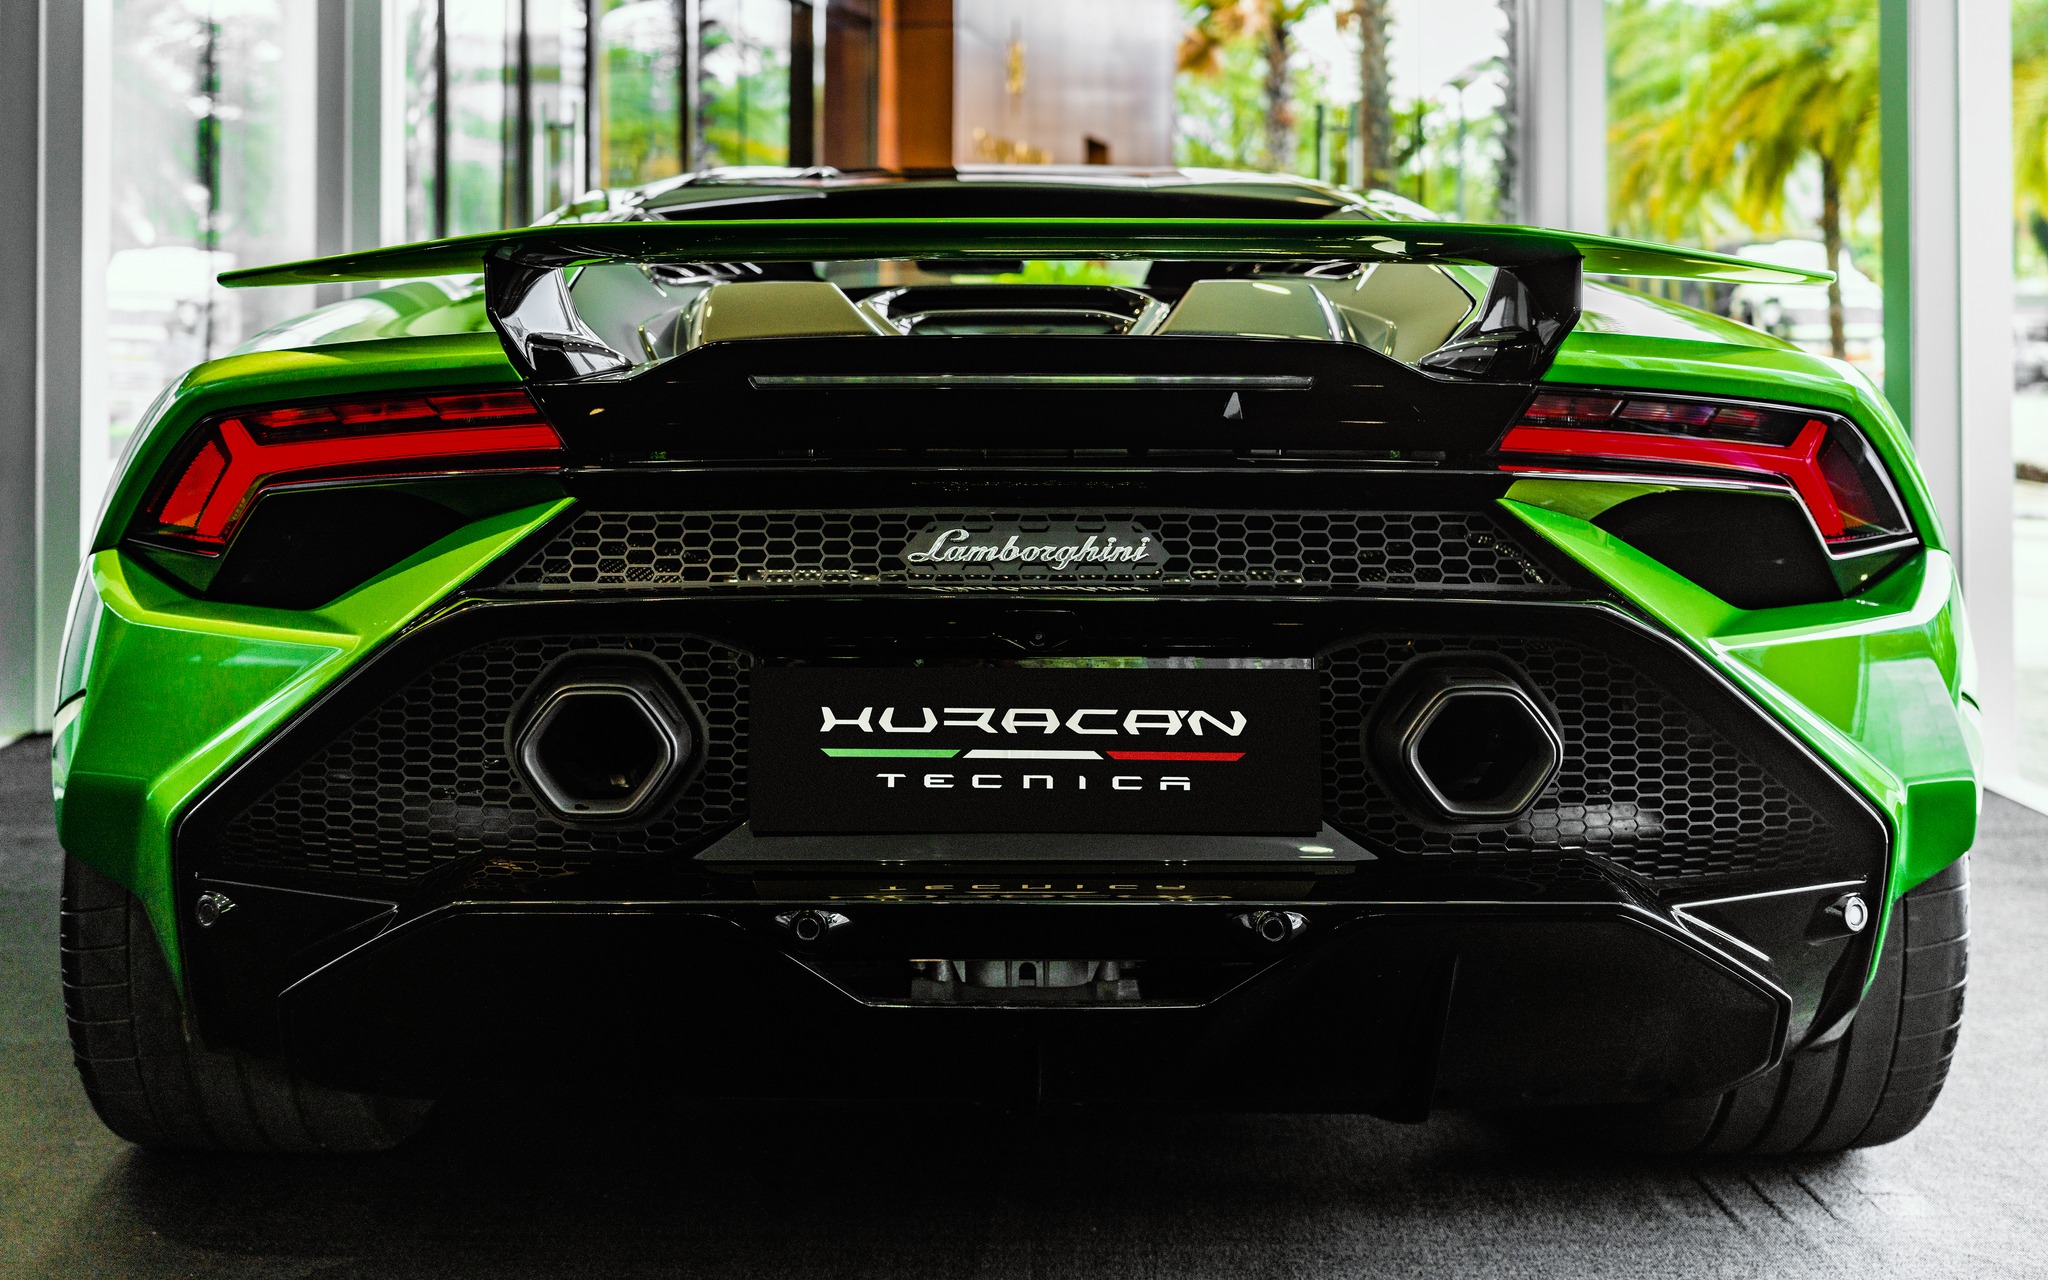 Chiêm ngưỡng bộ đôi hàng hiệu & siêu xe Lamborghini Huracan Tecnica tại Grand Marina, Gallery